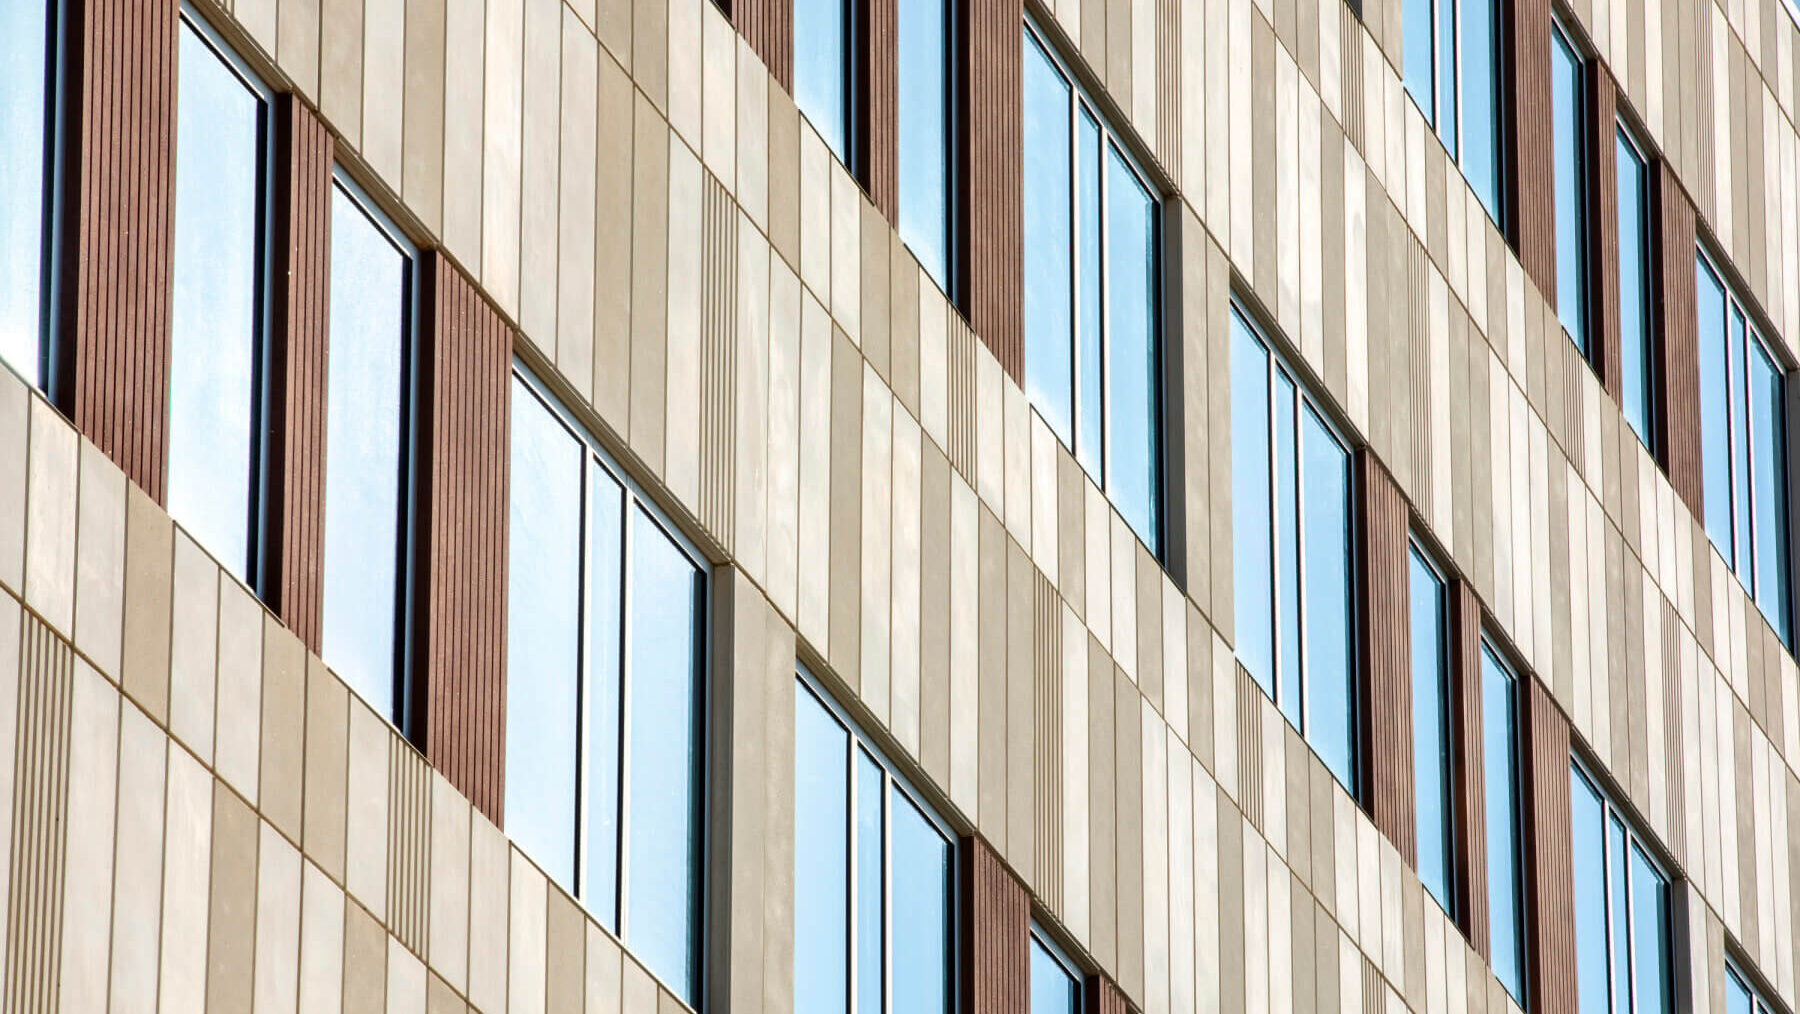 the concrete and glass façade of a building